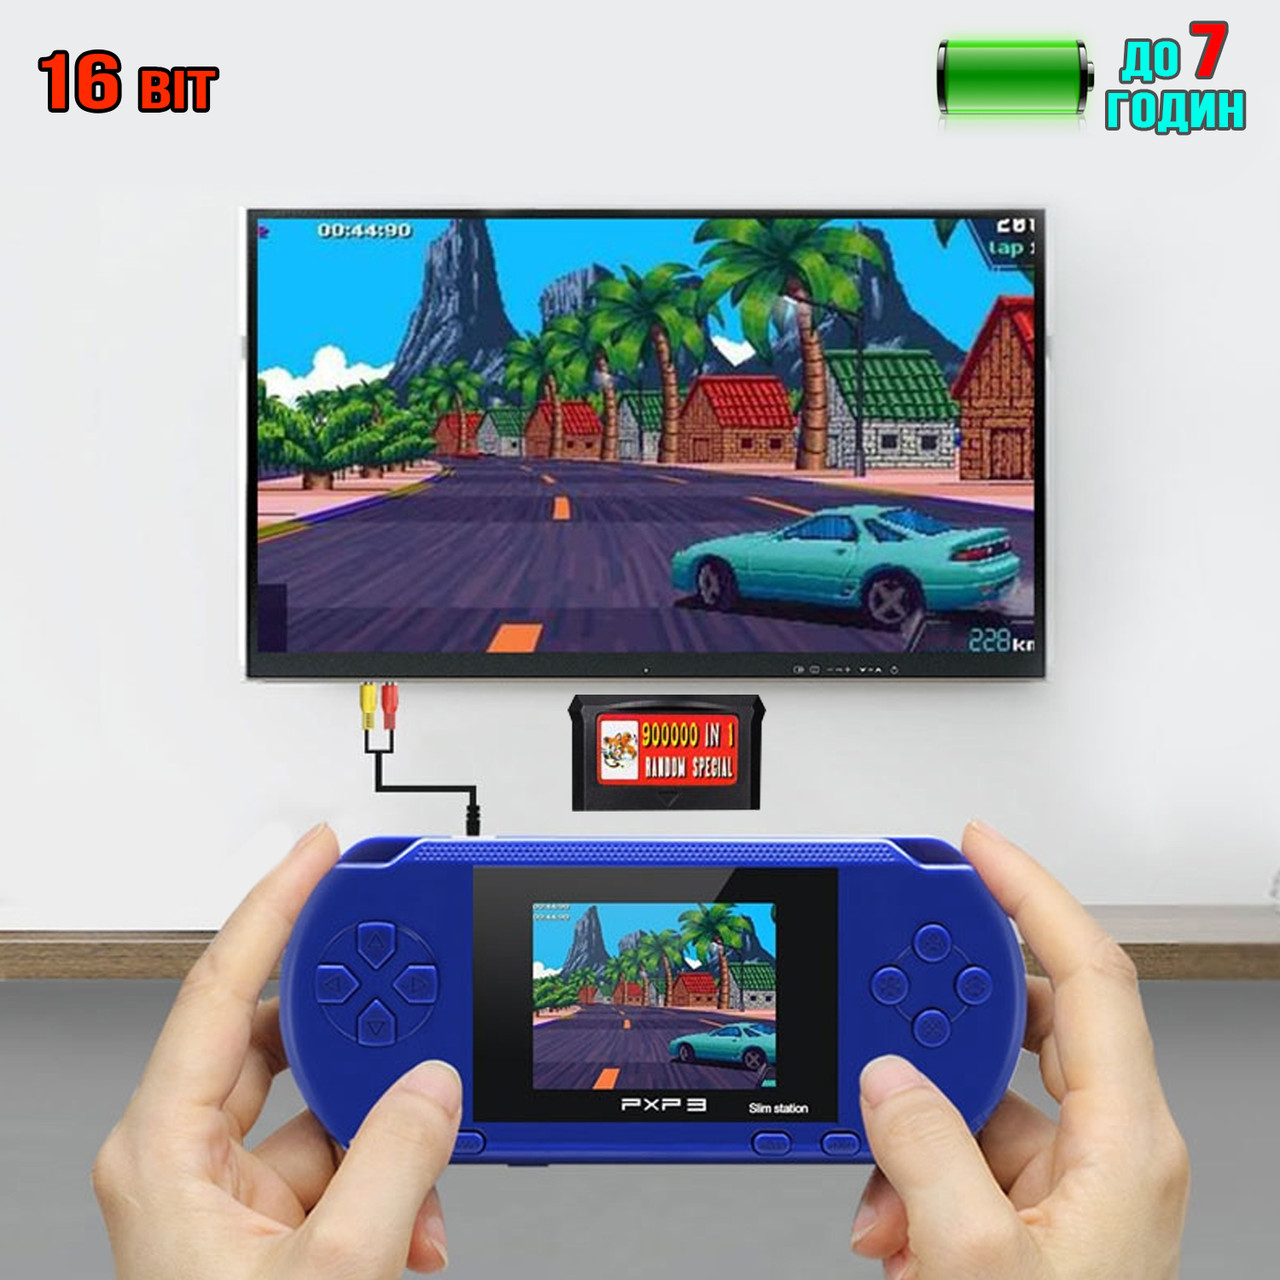 Портативная игровая ретро приставка с экраном 2.7" PXP3 270OMD игры 16bit, ТВ-выход Blue